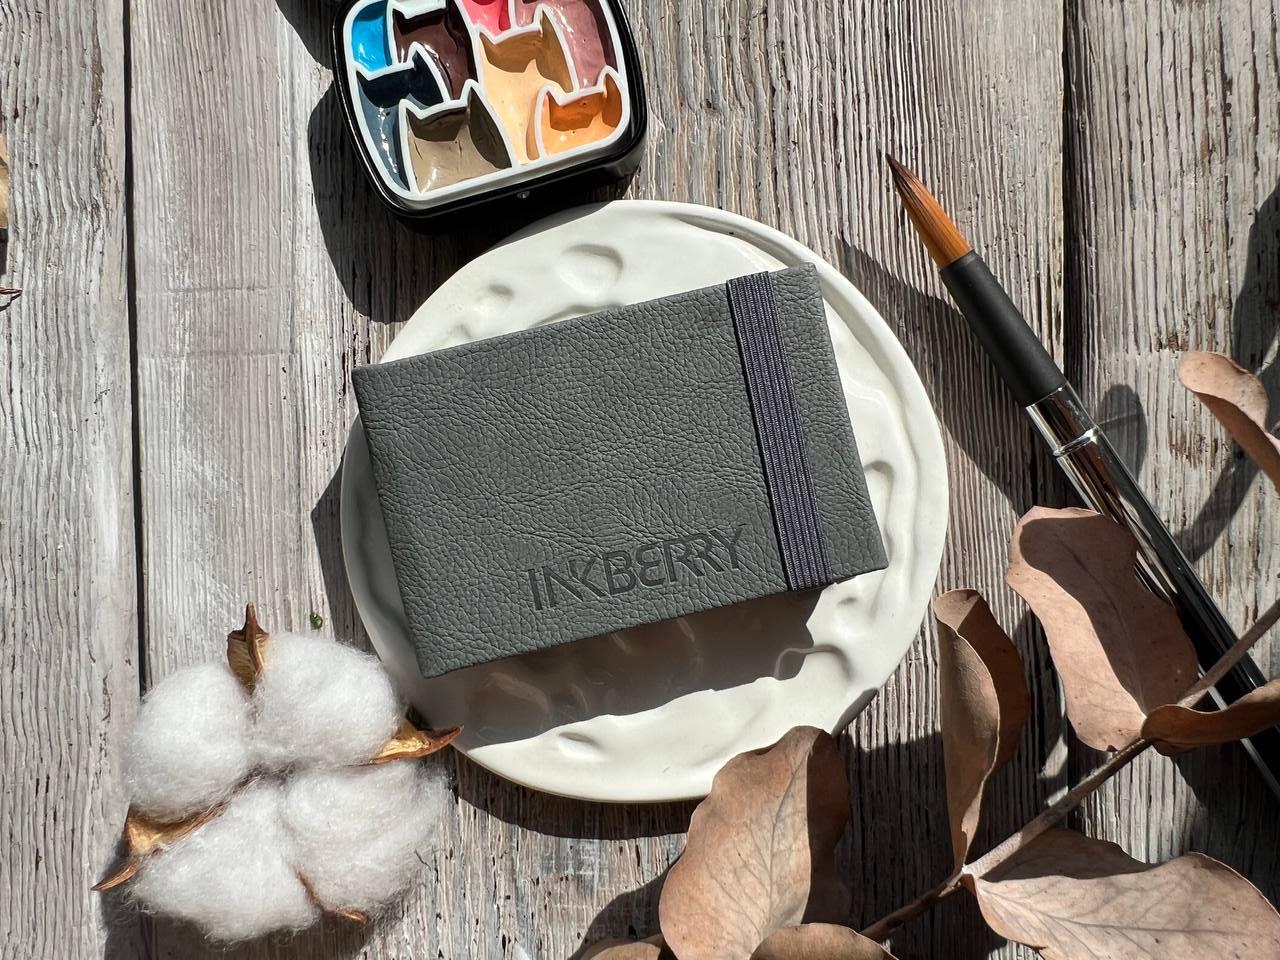 Скетчбук для акварели Inkberry 5х8 см 30 л 230 г 50% хлопка, серый книжная лавка грёз